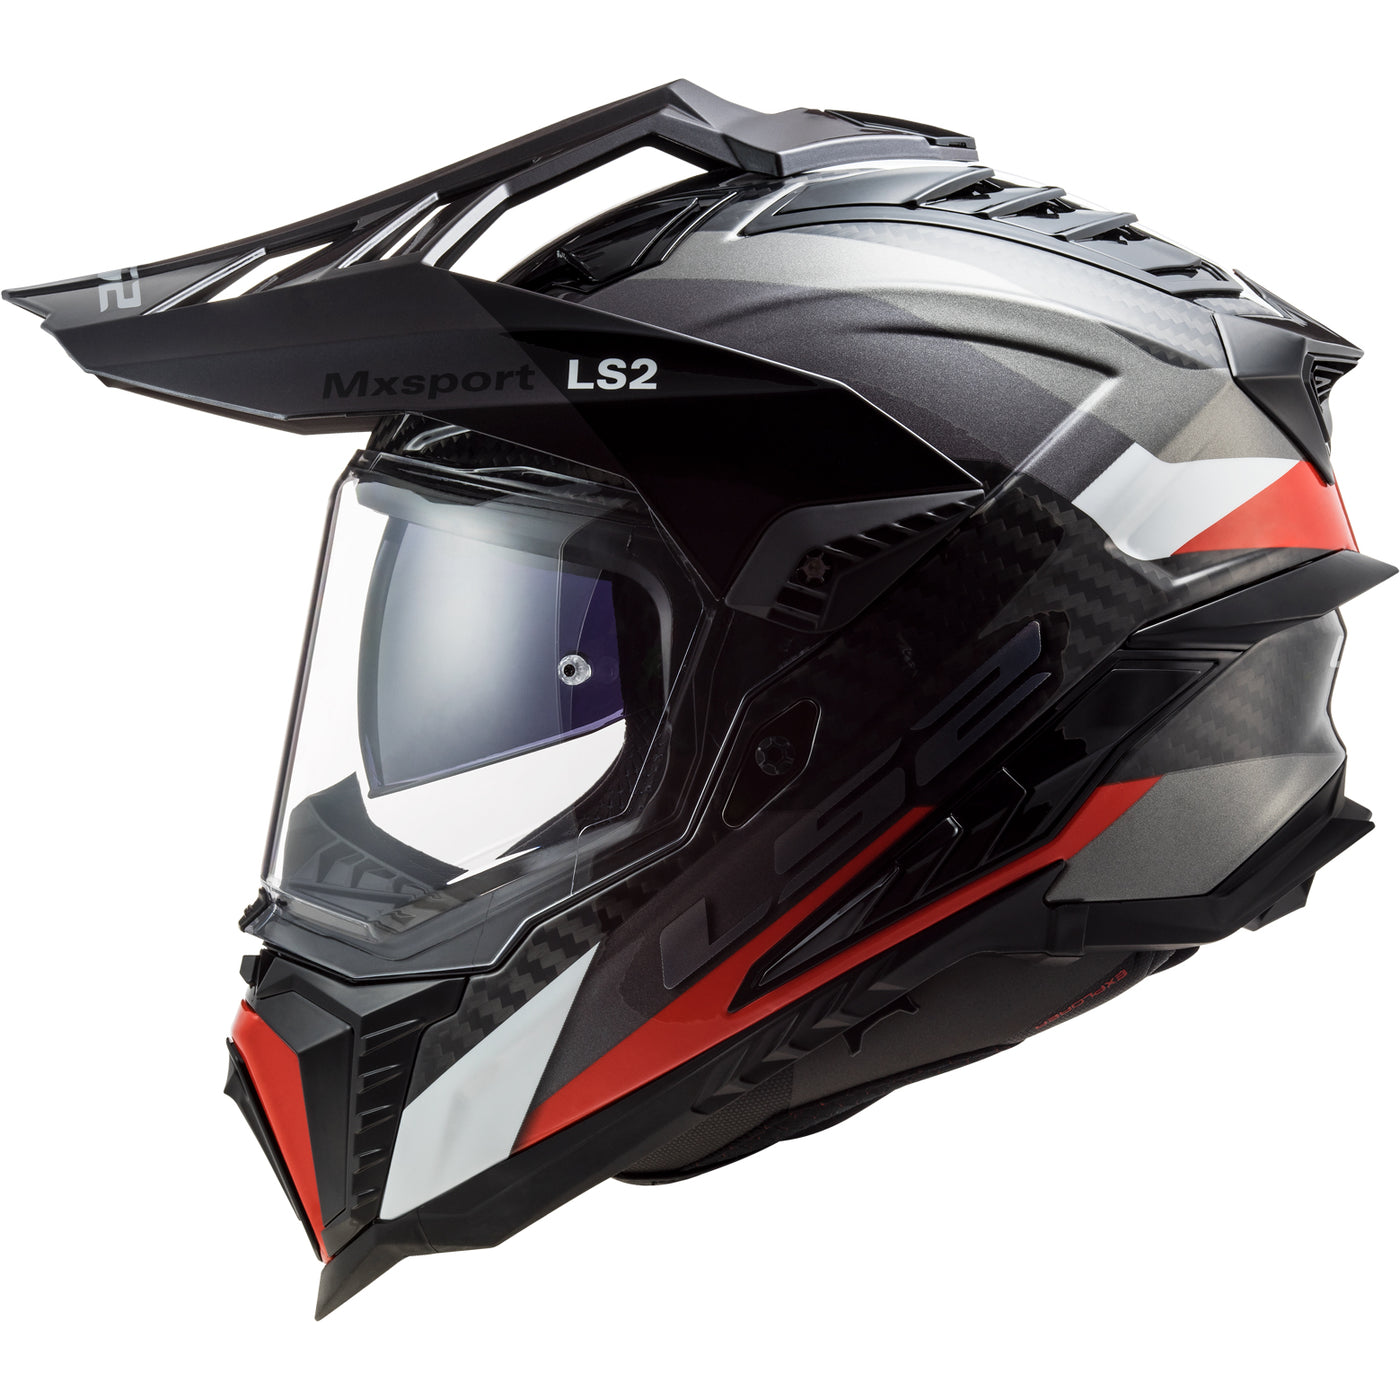 LS2 Helmets Explorer C Frontier Motorcycle Dual Sport Helmet